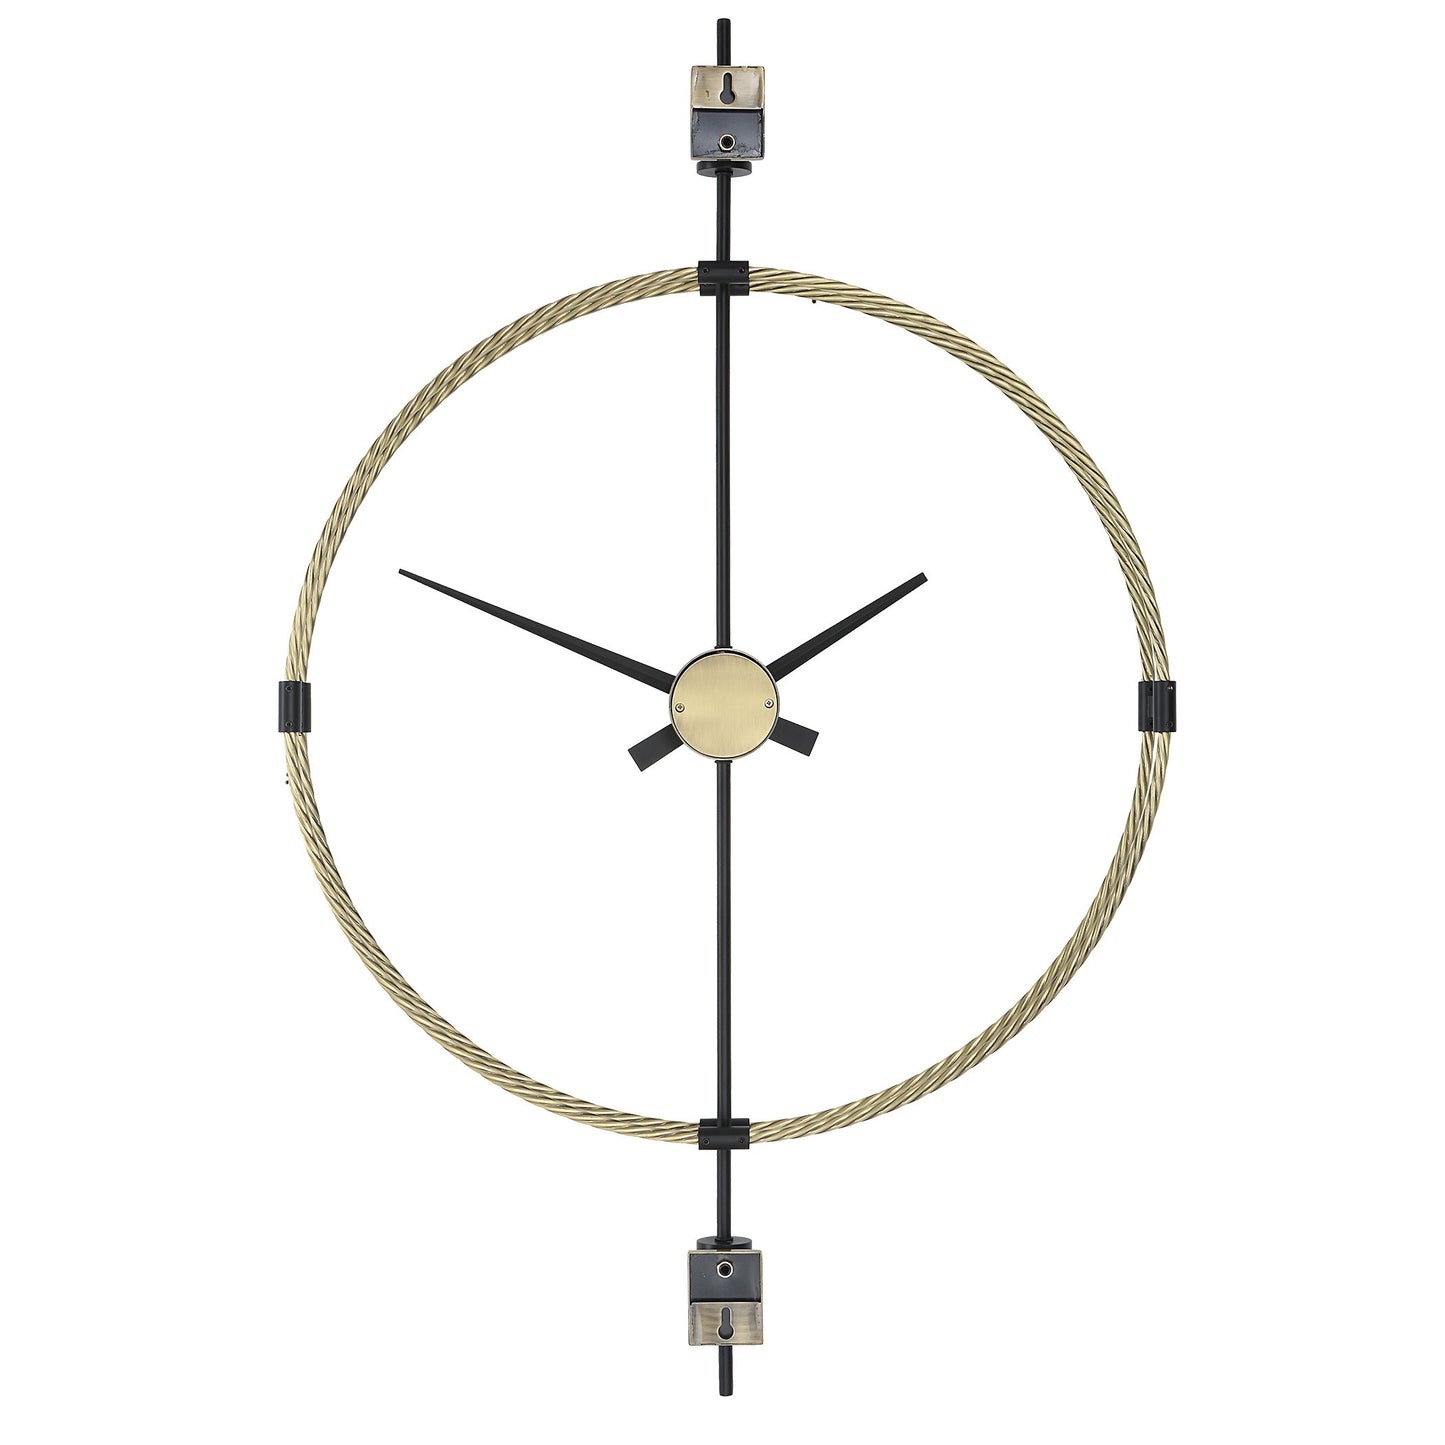 Time Flies - Modern Wall Clock